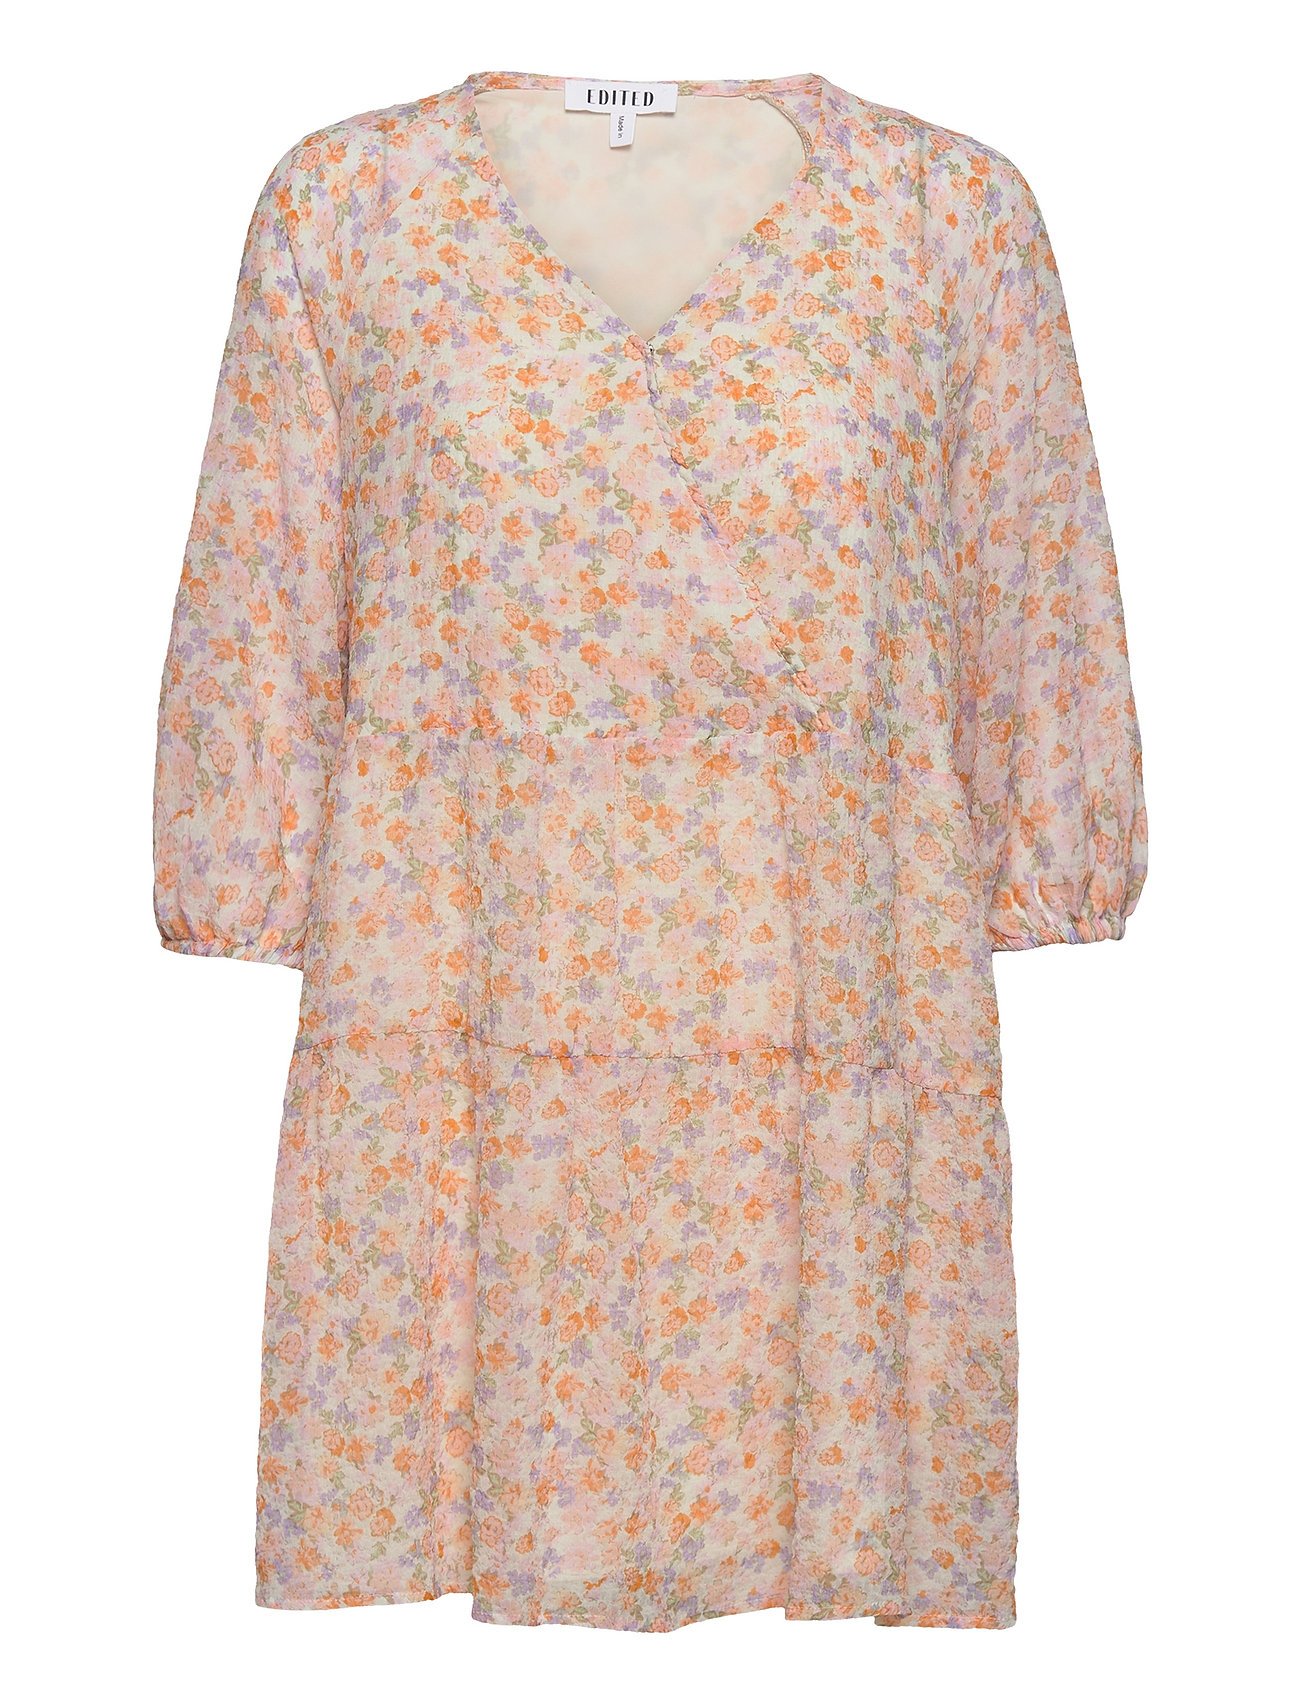 Marou Dress Kort Klänning Multi/mönstrad EDITED